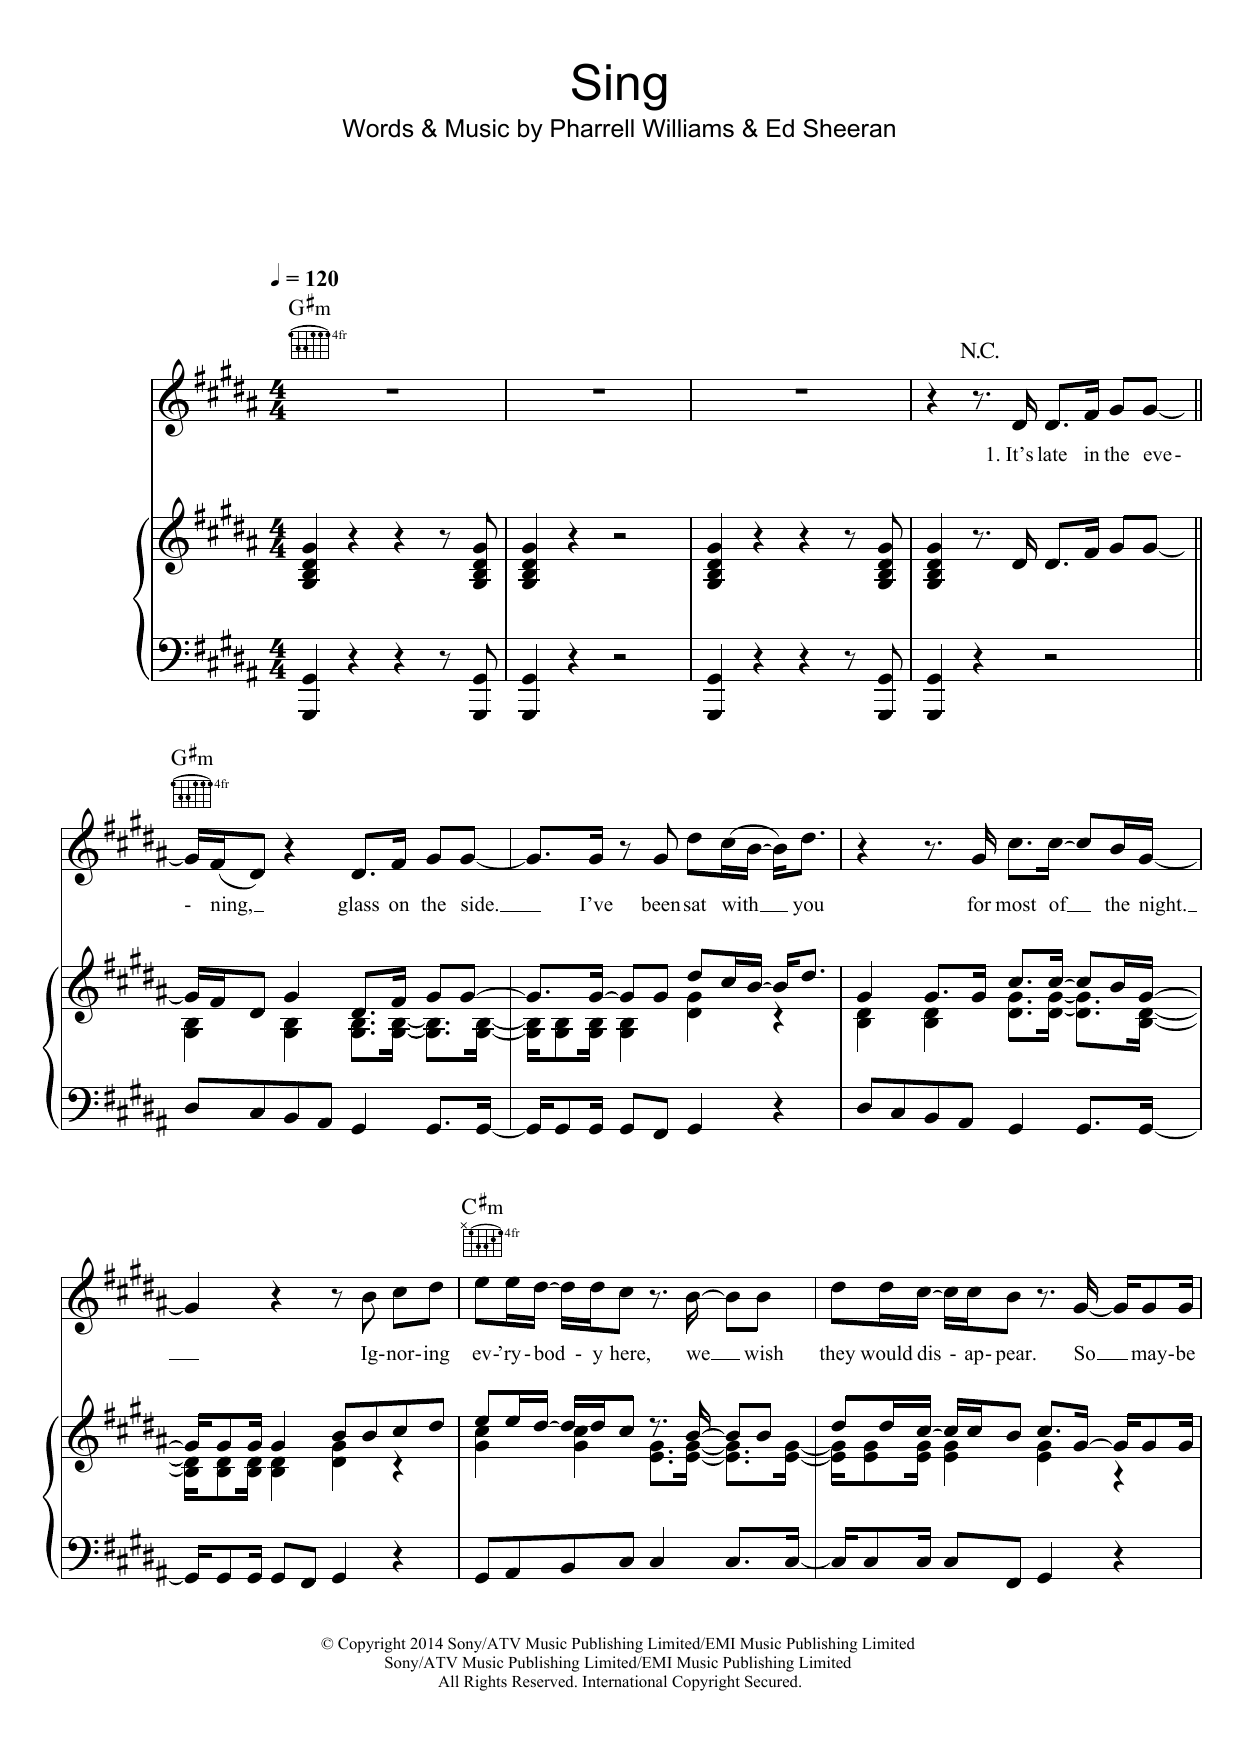 Ed Sheeran Sing Sheet Music Notes & Chords for Guitar Tab - Download or Print PDF